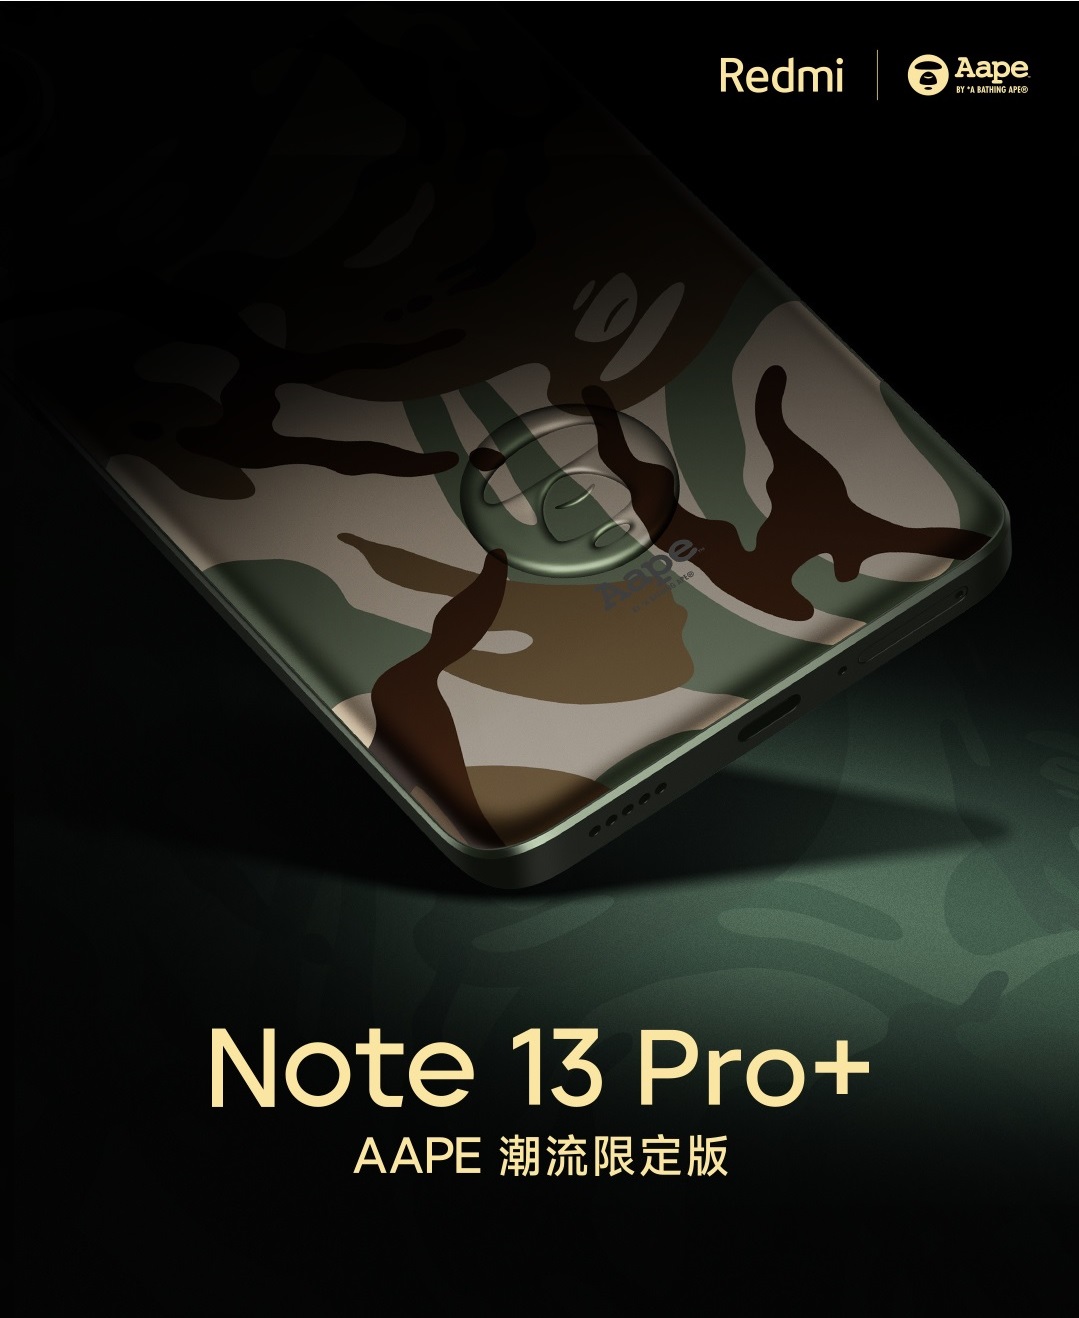 Redmi випустить спеціальну версію Note 13 Pro+ в колаборації з AAPE